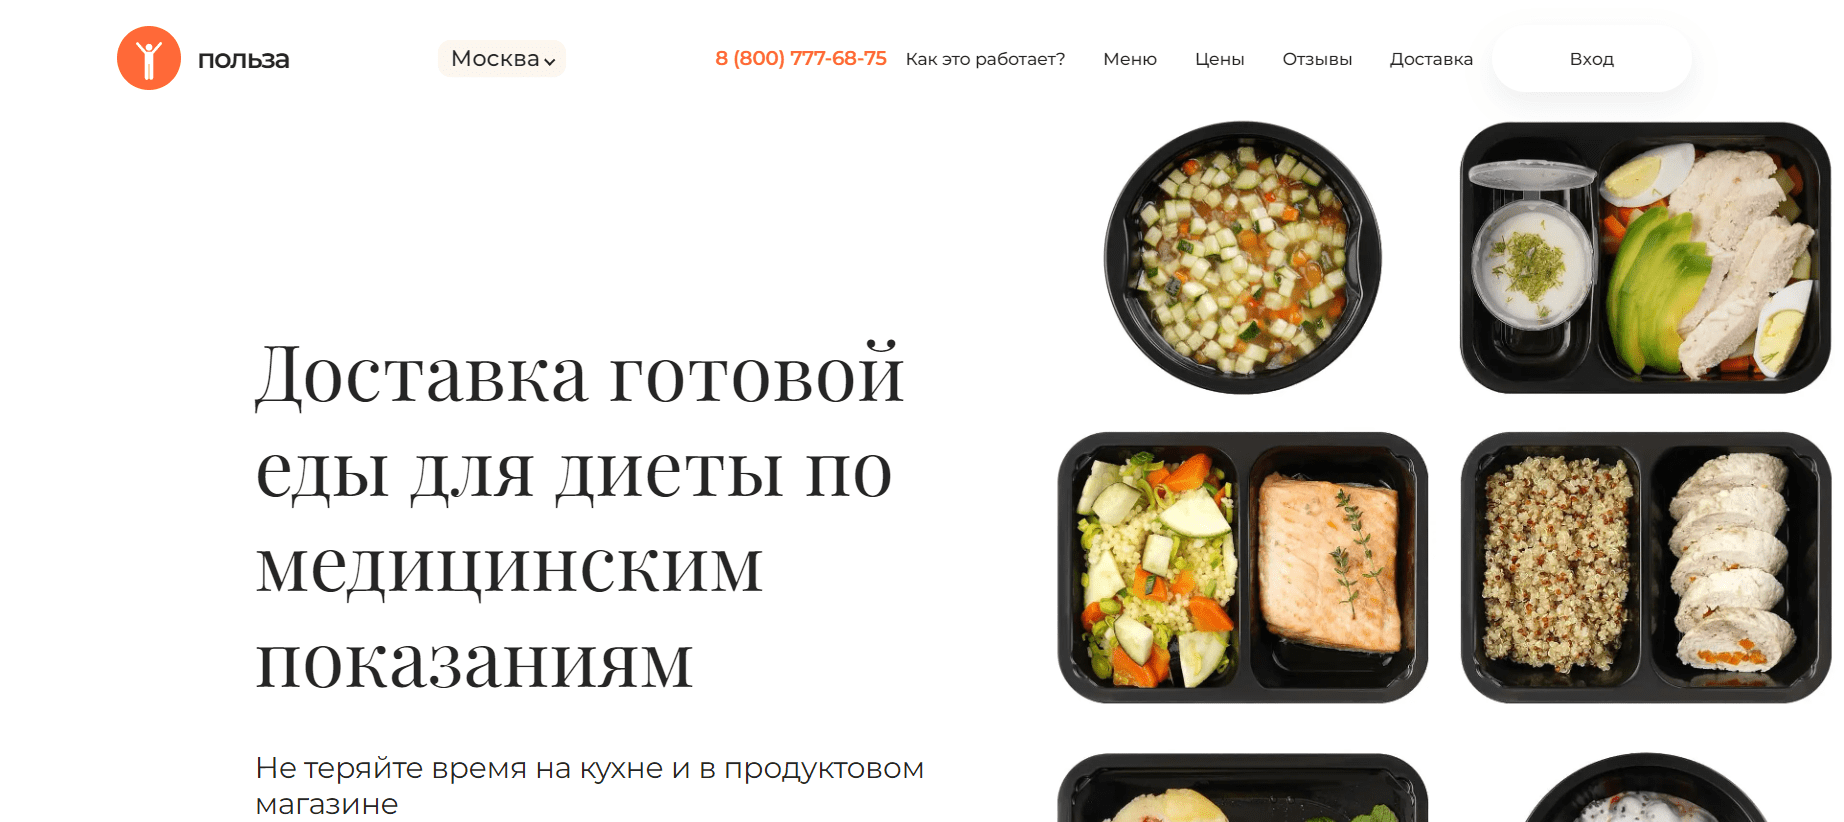 Польза — доставка здоровой пищи в Москве